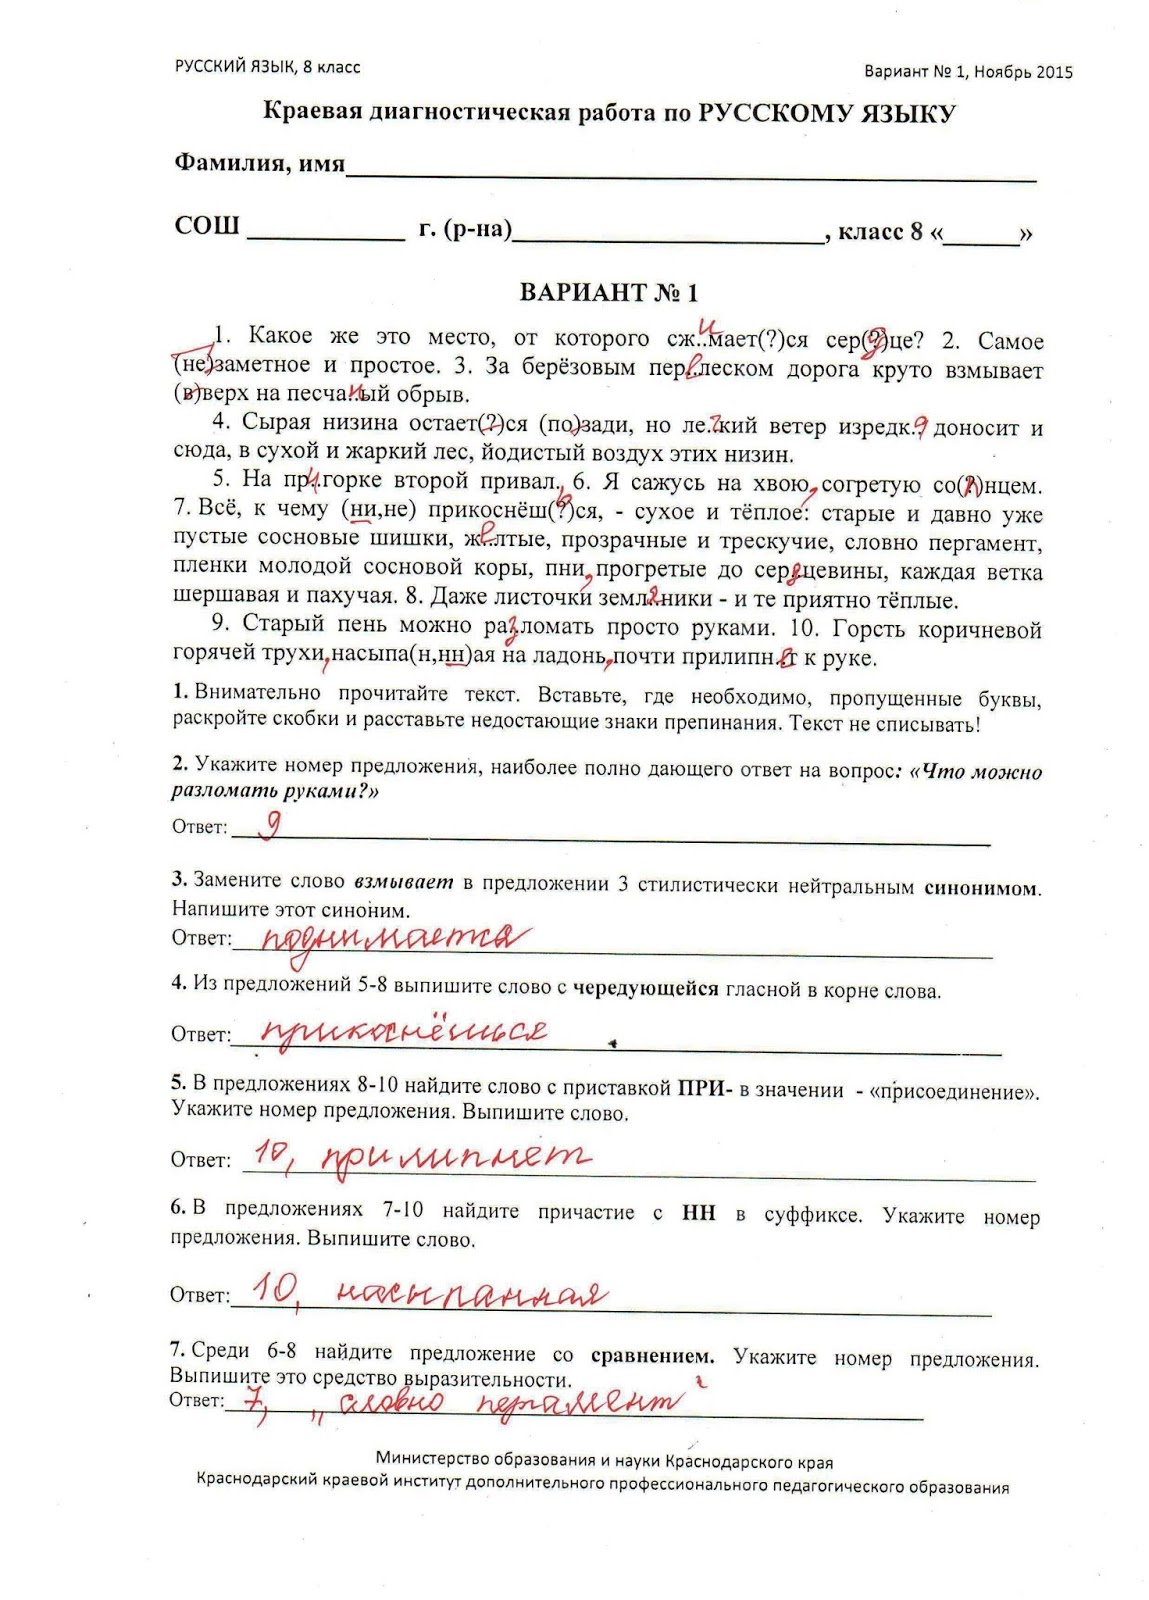 Краевая диагностическая работа по русскому языку 8 класс 2017 год